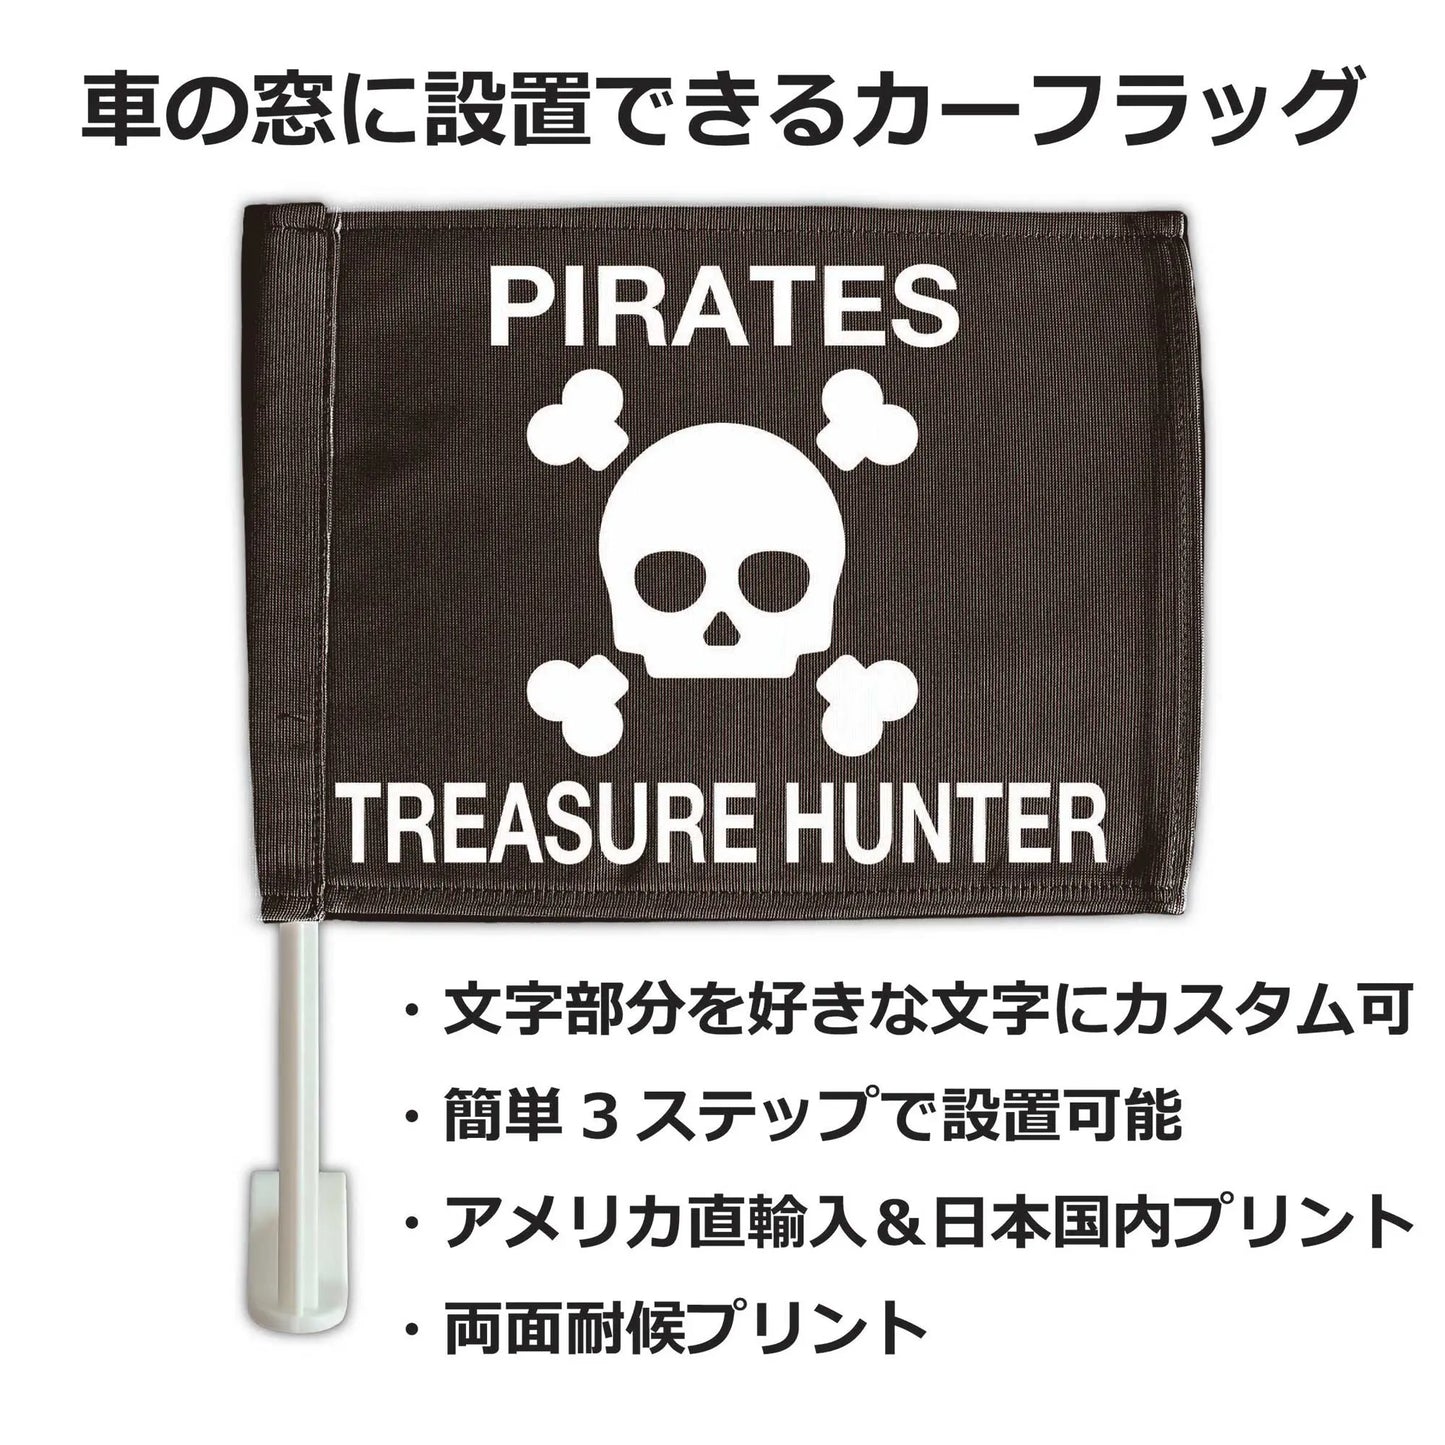 【カーフラッグ】PIRATES/海賊/自動車用オリジナルフラッグ・旗 PL8HERO